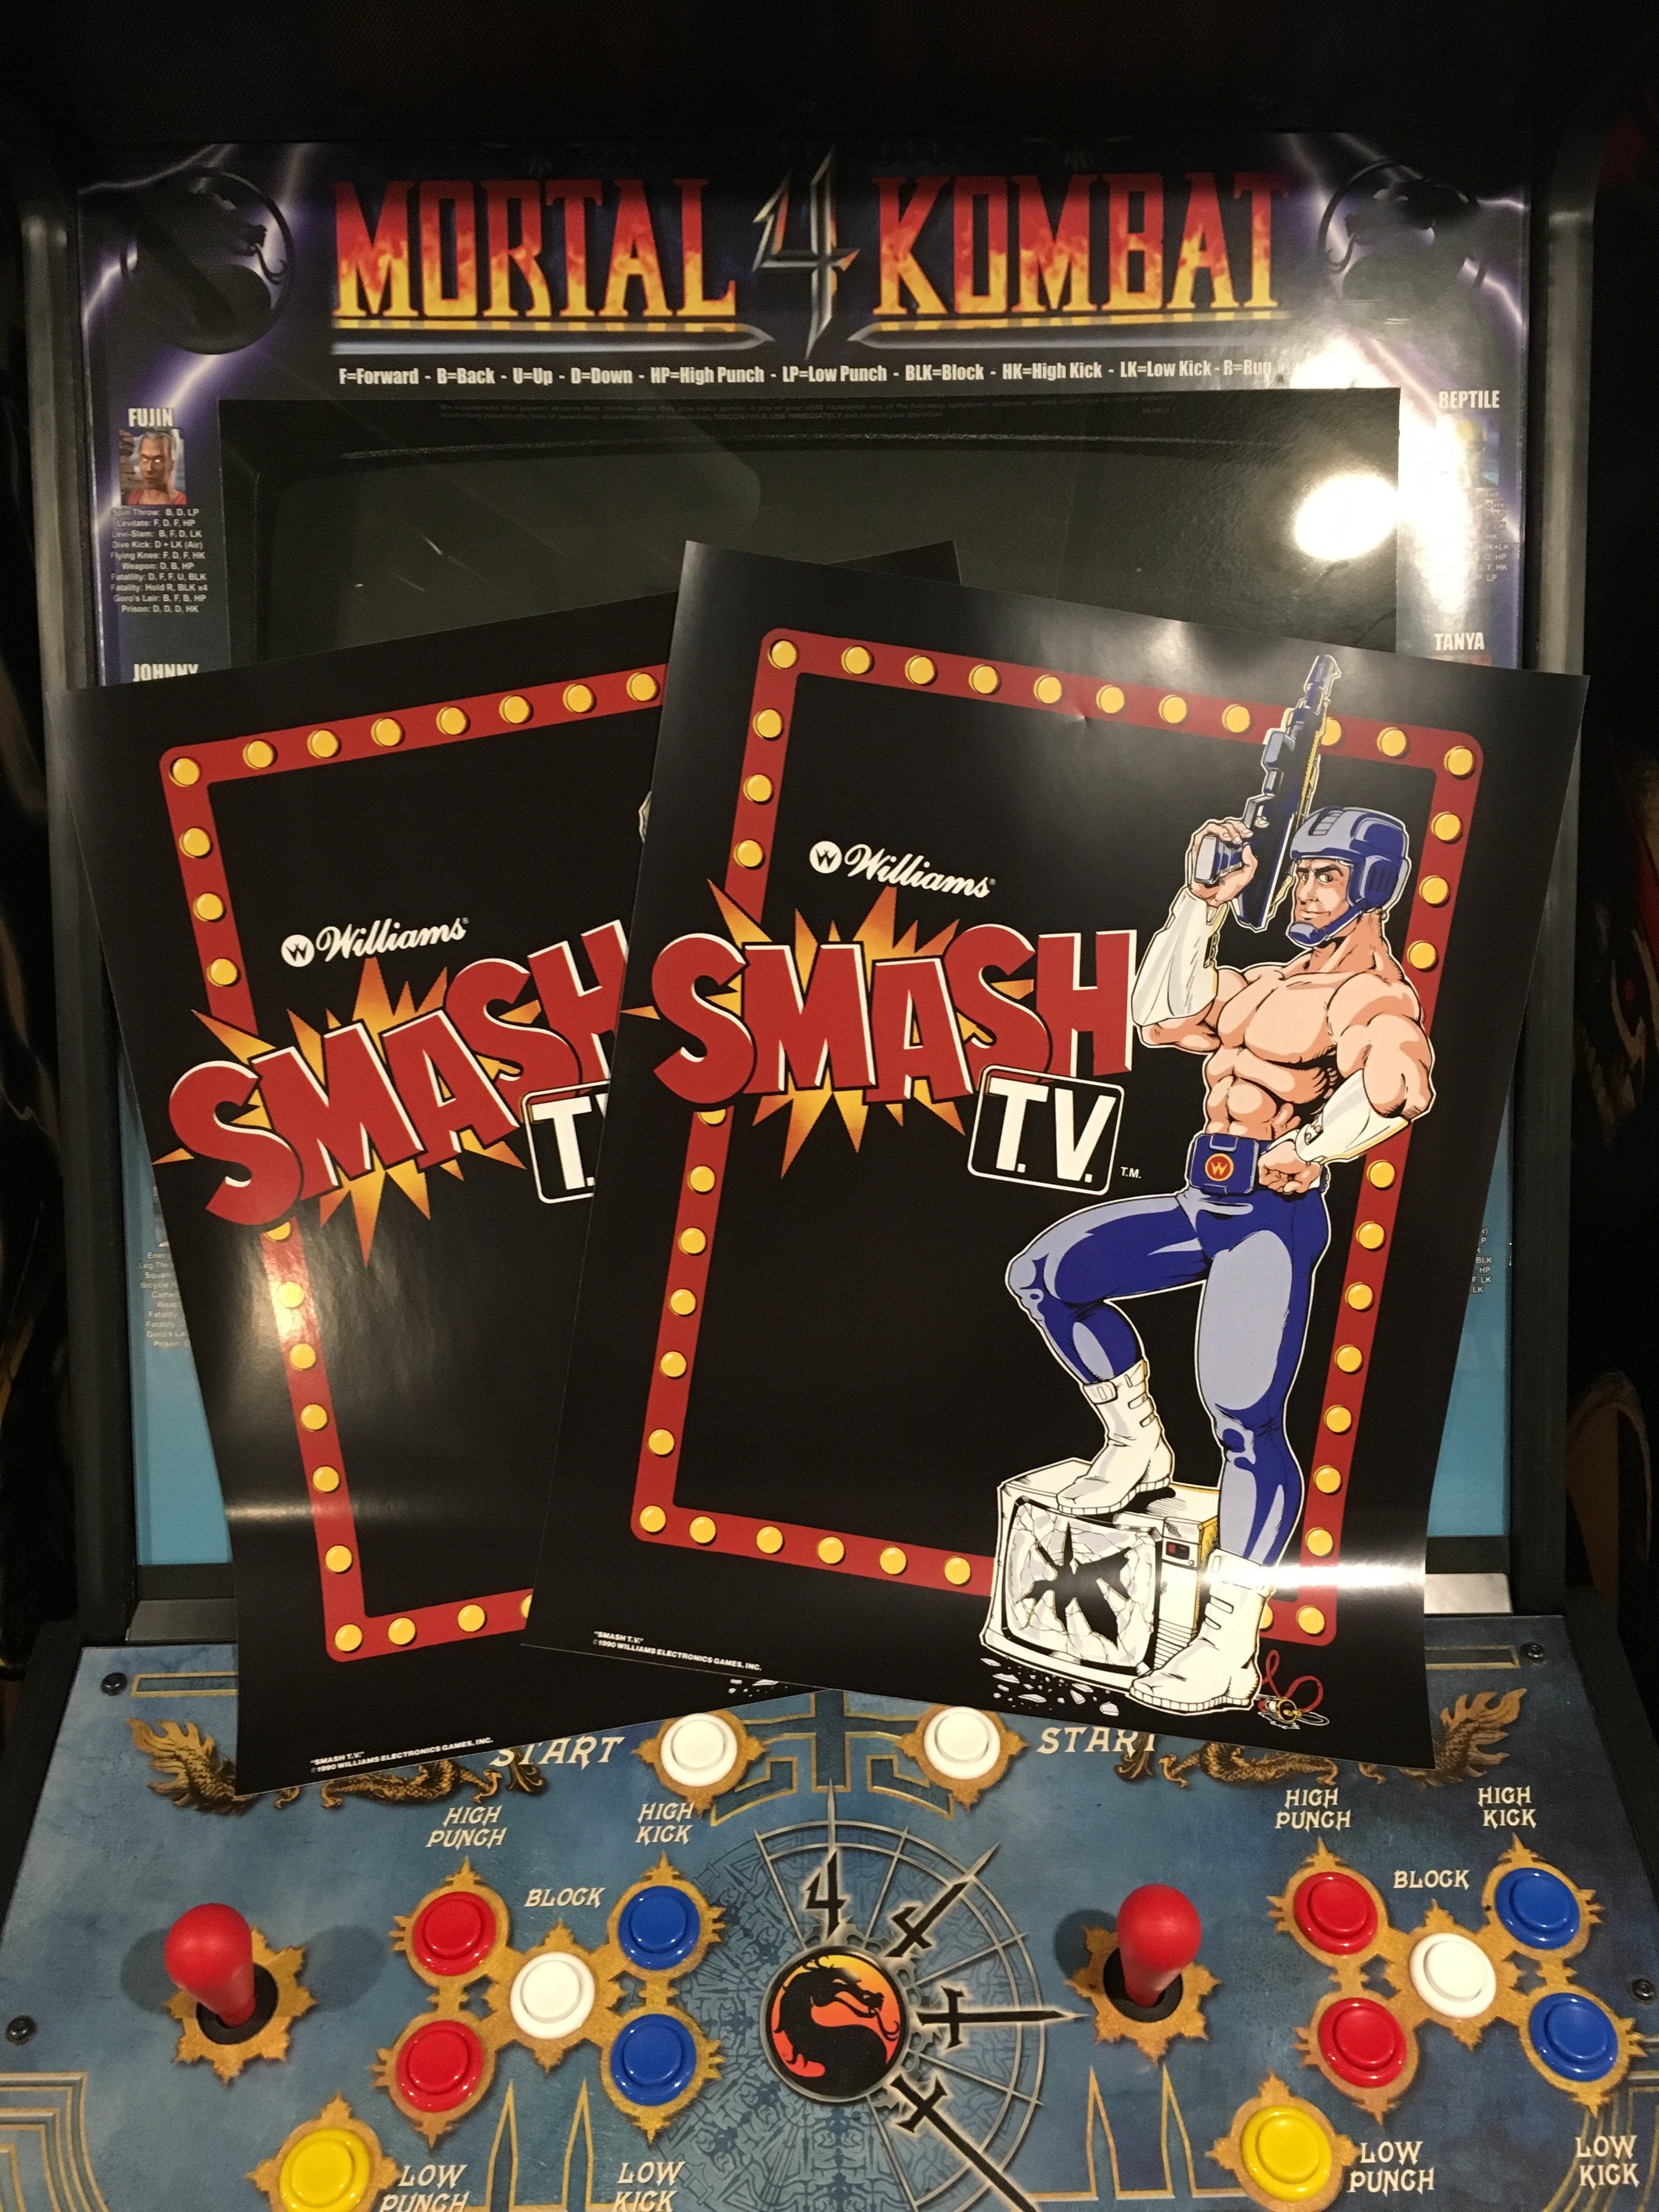 Arte secundario de conversión de Smash TV